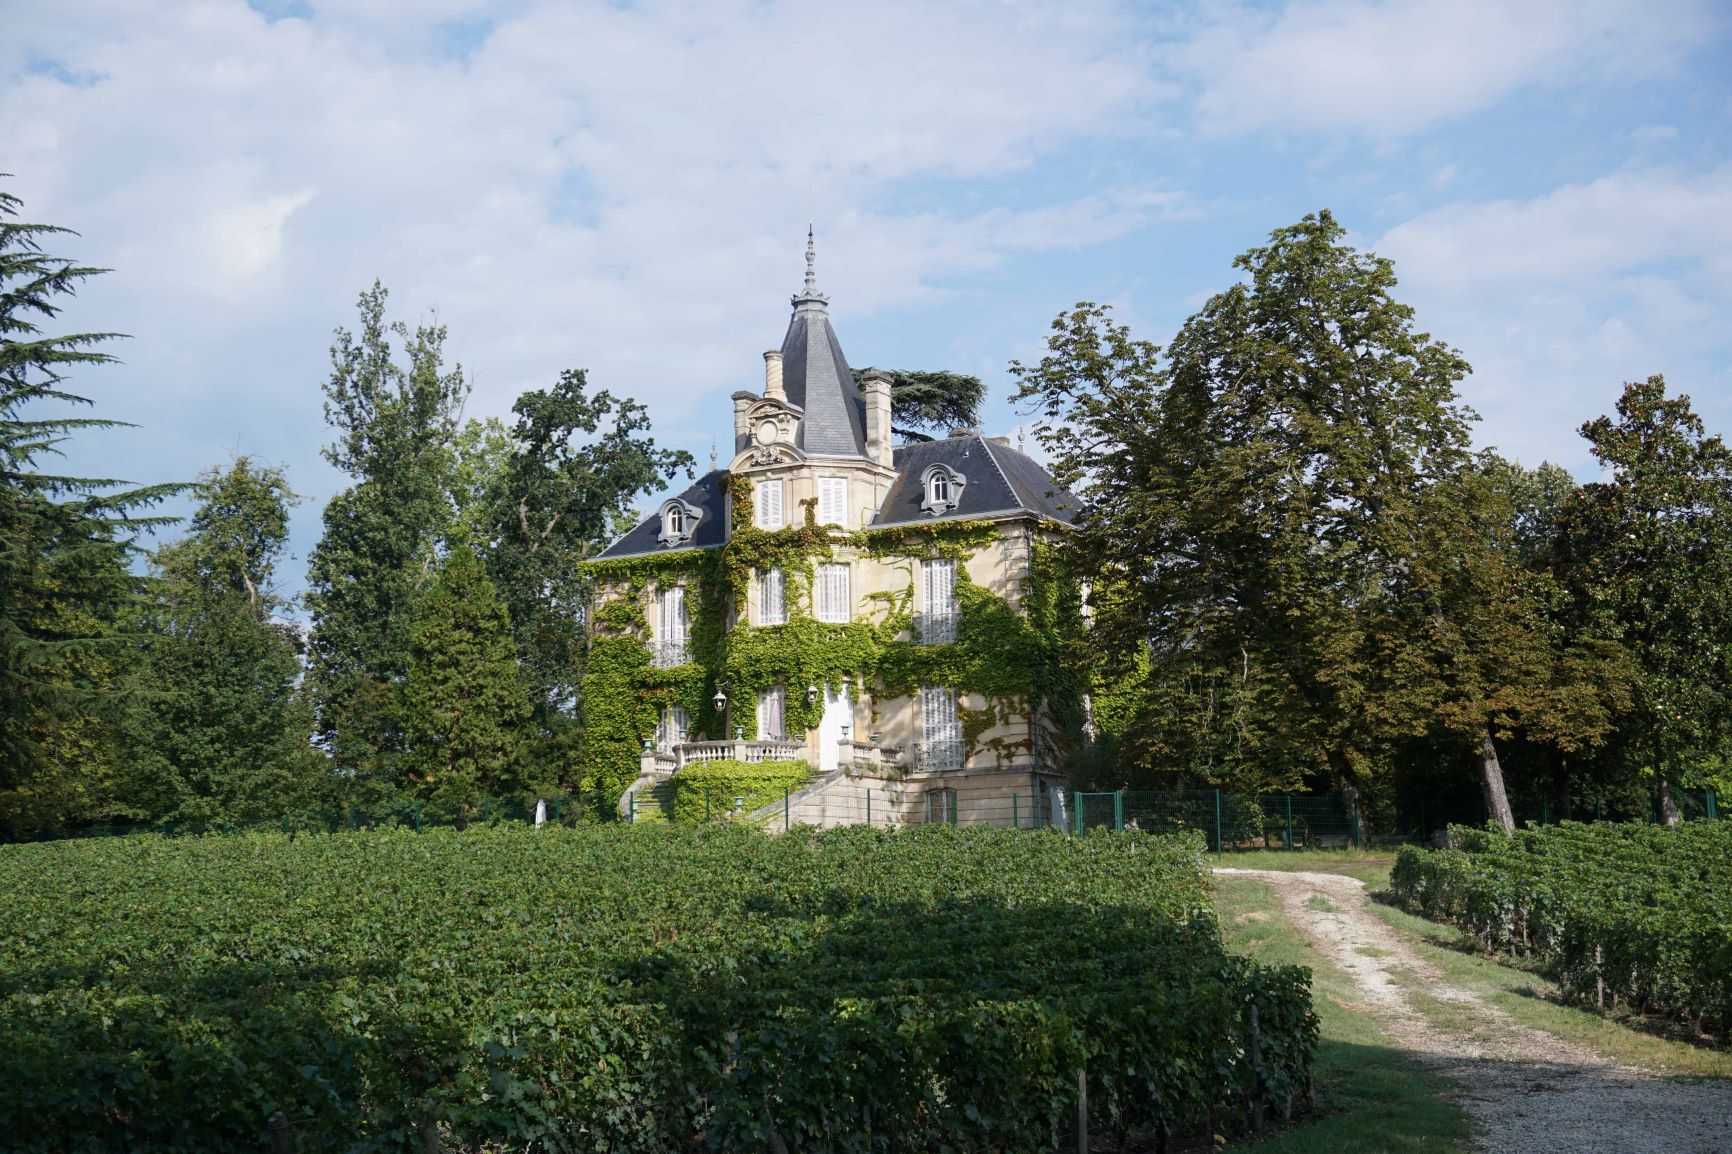 Chateau les carmes haut brion pessac leognan avenir serenite patrimoine 2018